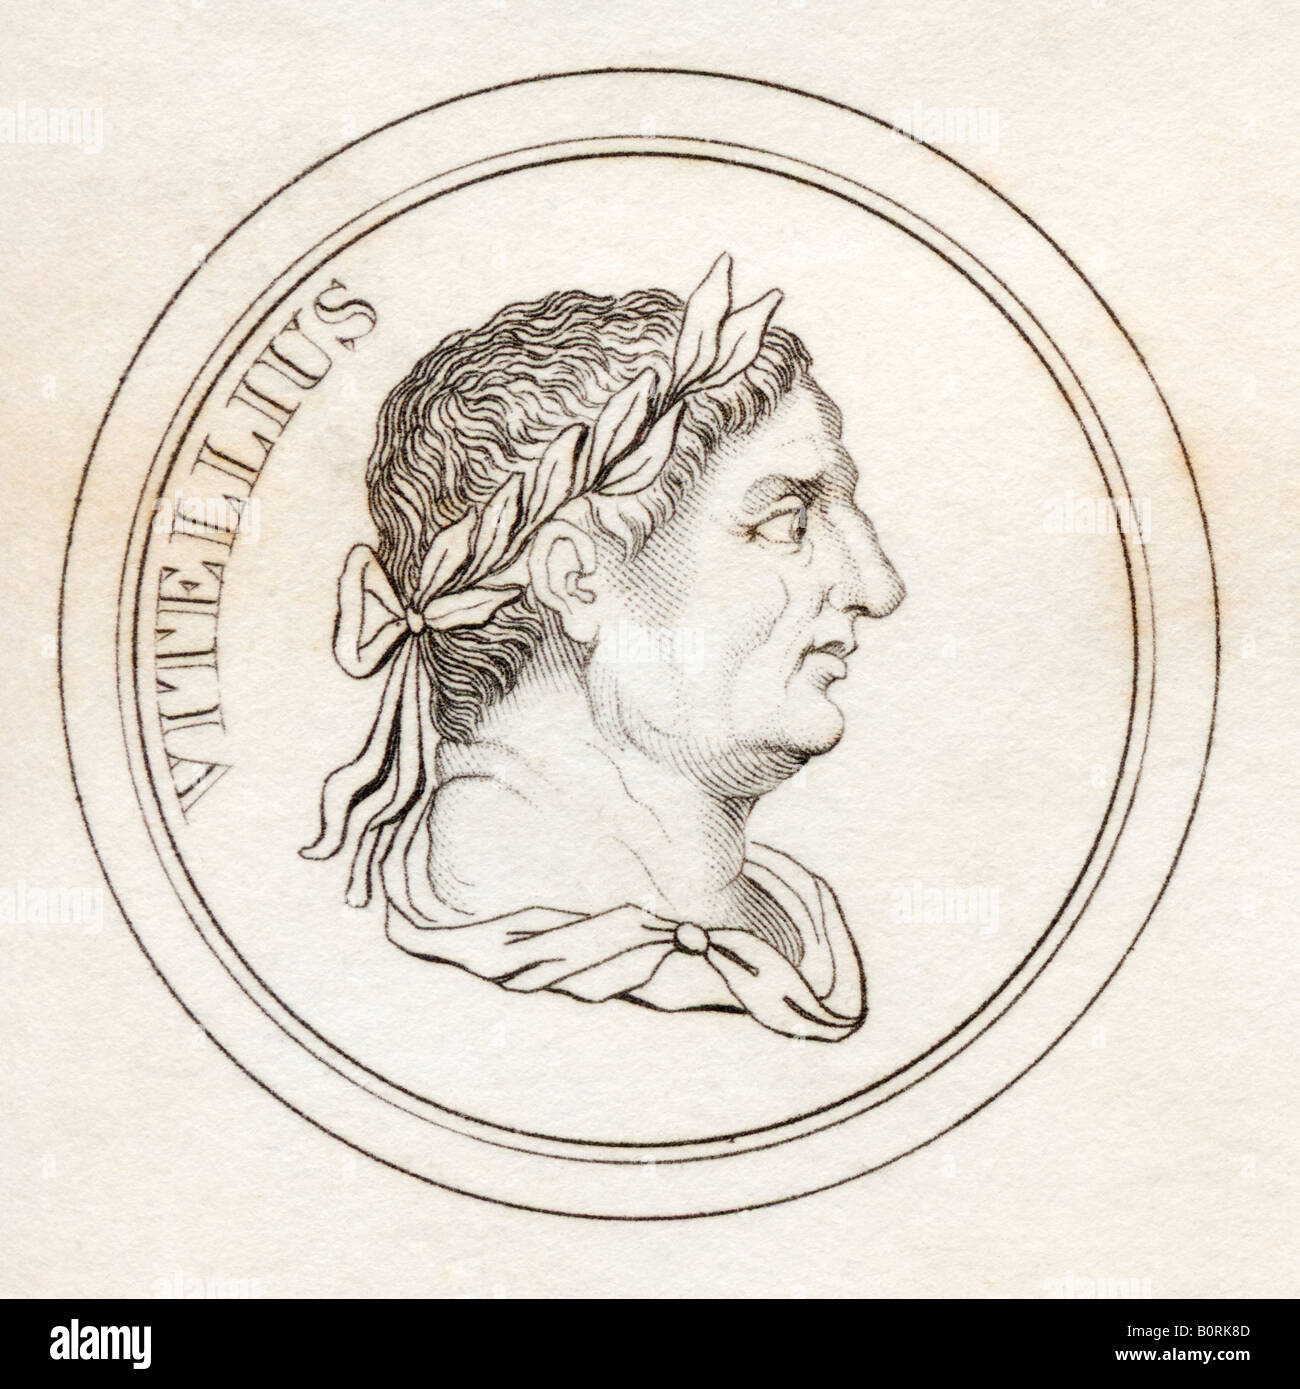 Vitellius, AD15 - 69.  Aulus Vitellius Germanicus Augustus.  Roman emperor.  From the book Crabbs Historical Dictionary published 1825 Stock Photo